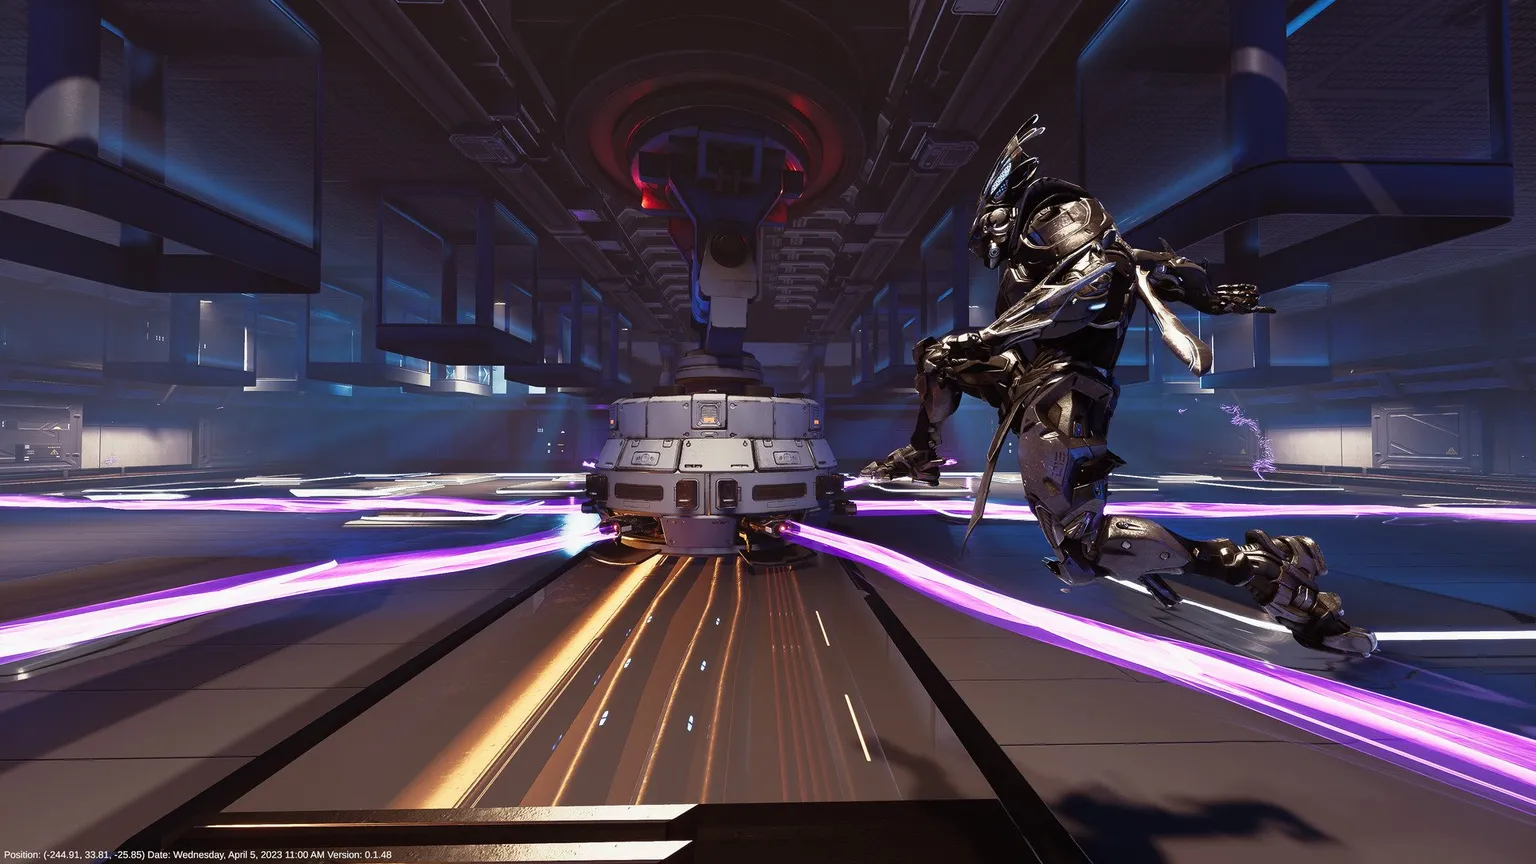 Skærmbillede fra Proving Grounds, der viser Reyu, der hopper over lilla lasere i et scifi-dystopisk lagermiljø.